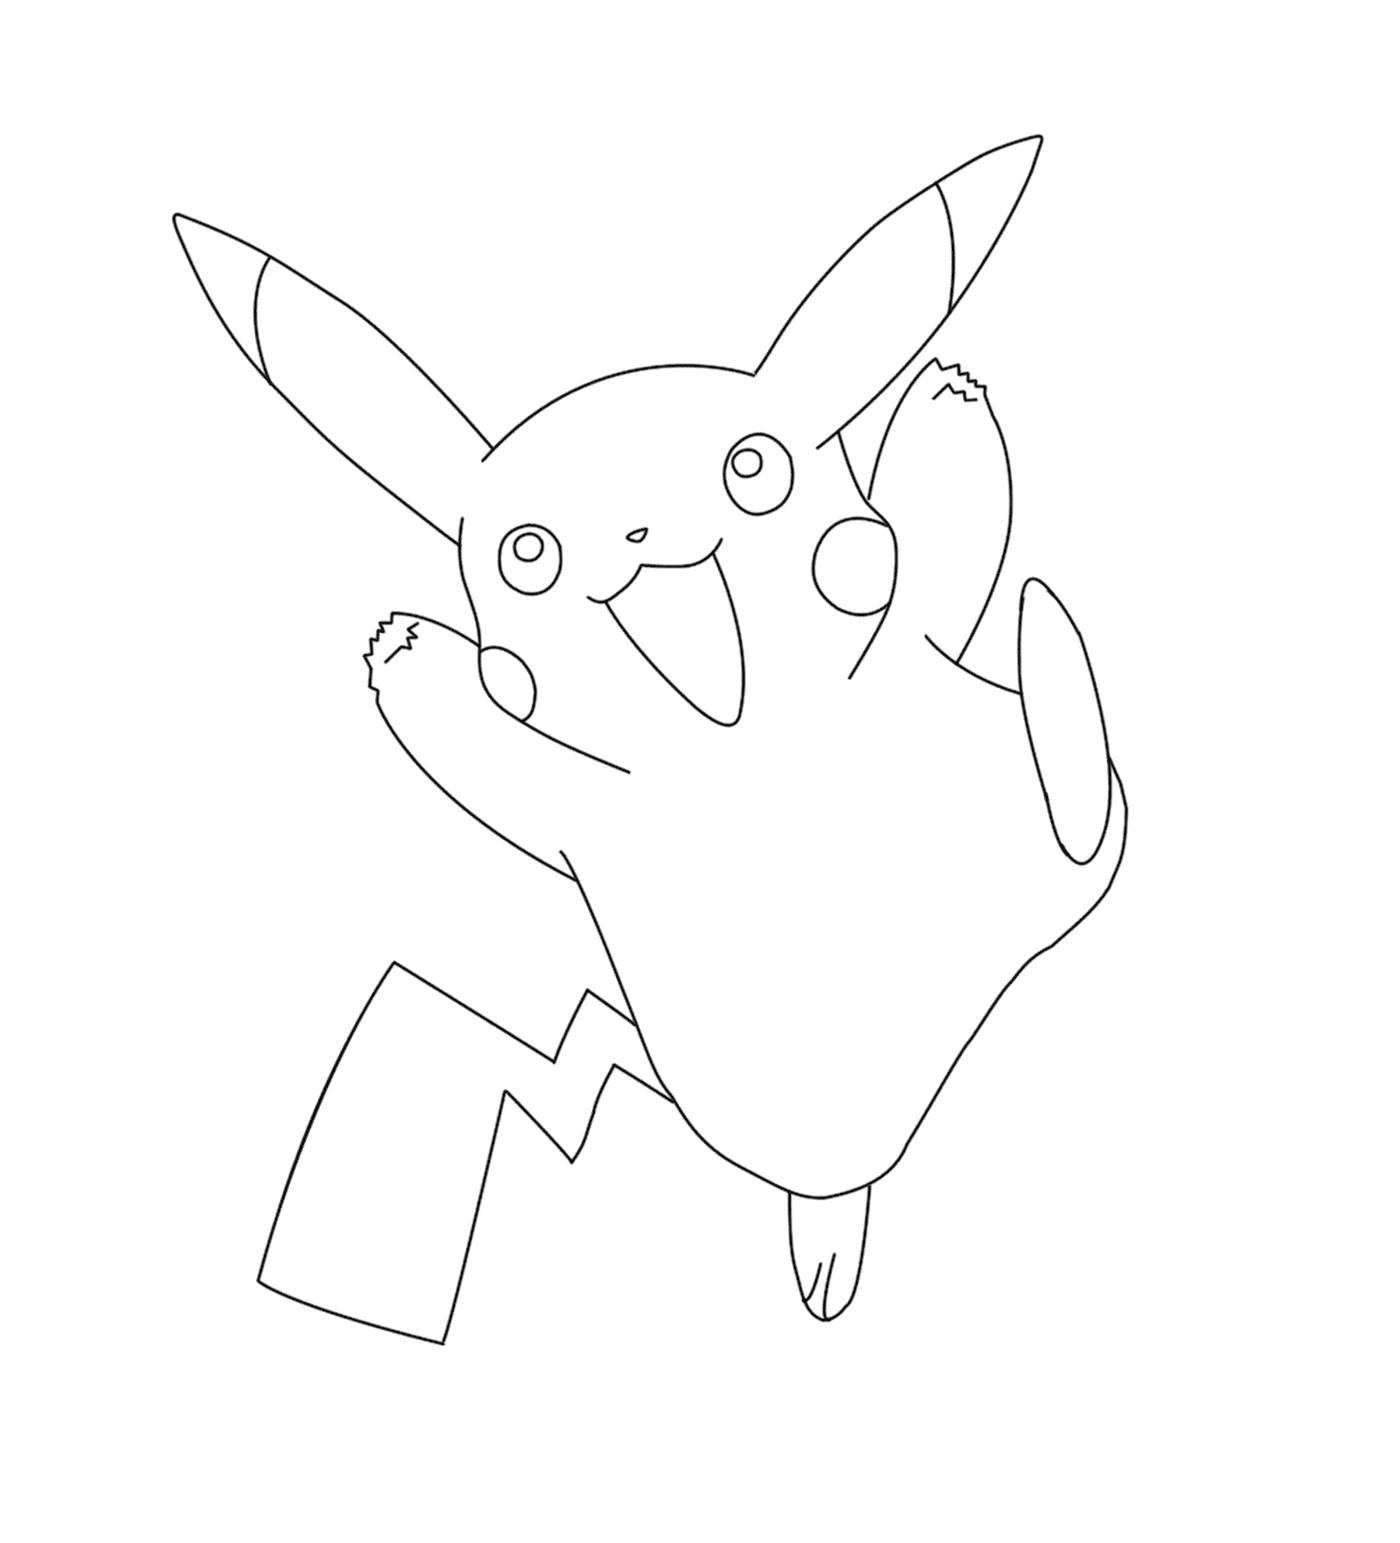  Pikachu en el juego Pokémon Go 